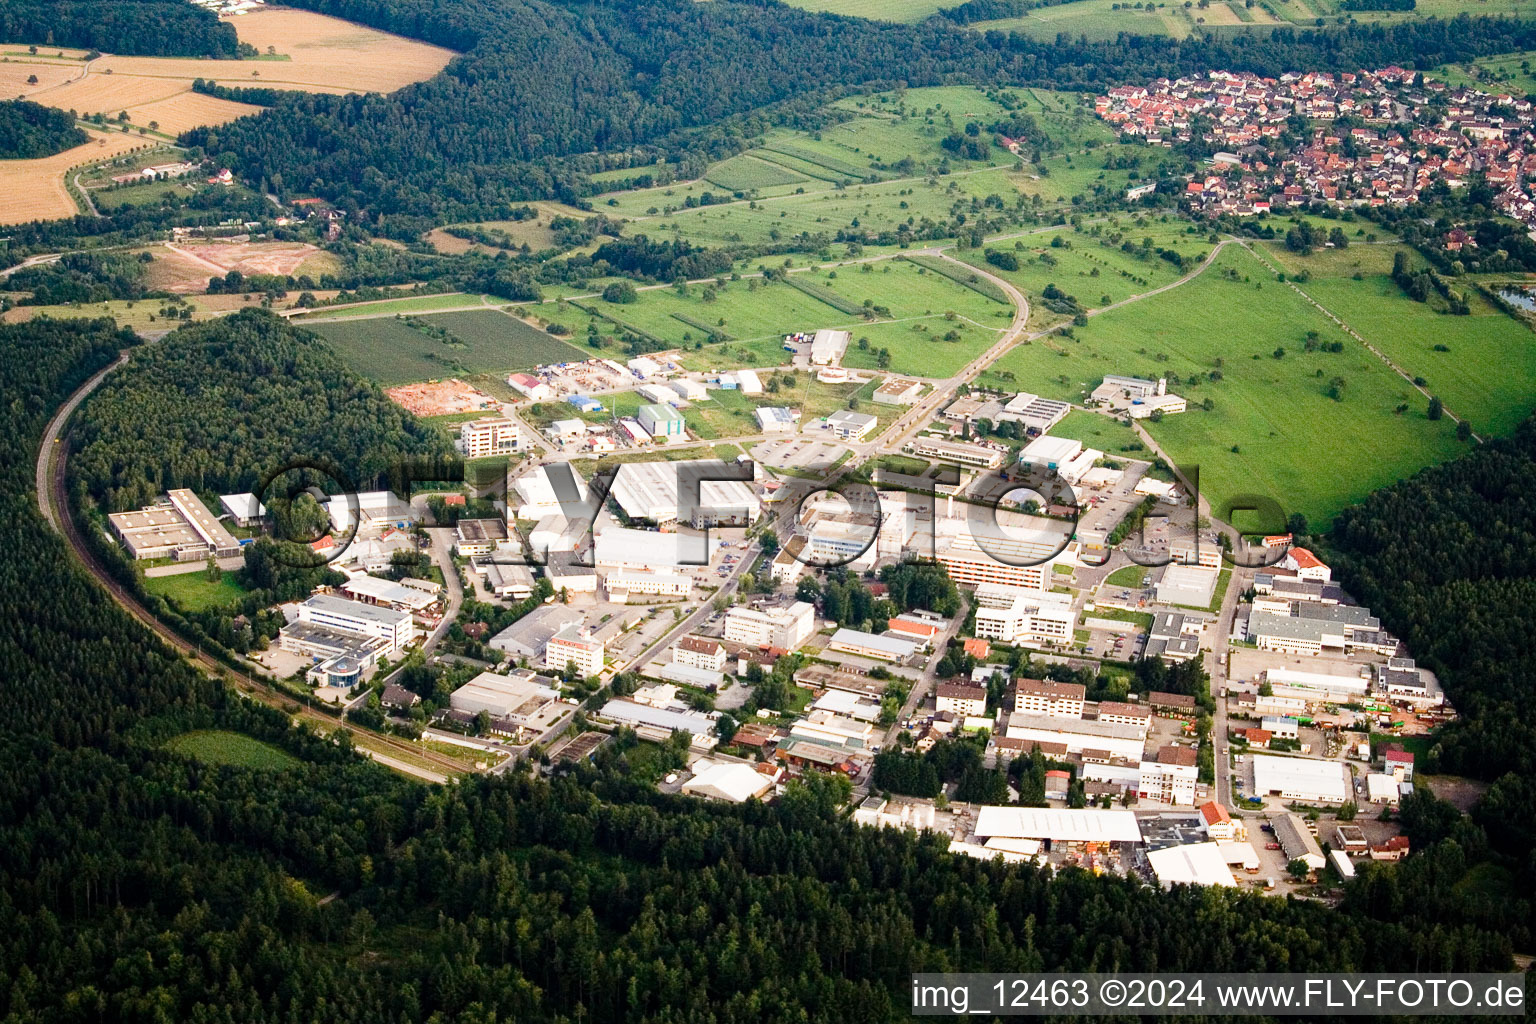 Vue aérienne de Zone industrielle et commerciale du quartier d'Ittersbach à le quartier Im Stockmädle in Karlsbad dans le département Bade-Wurtemberg, Allemagne